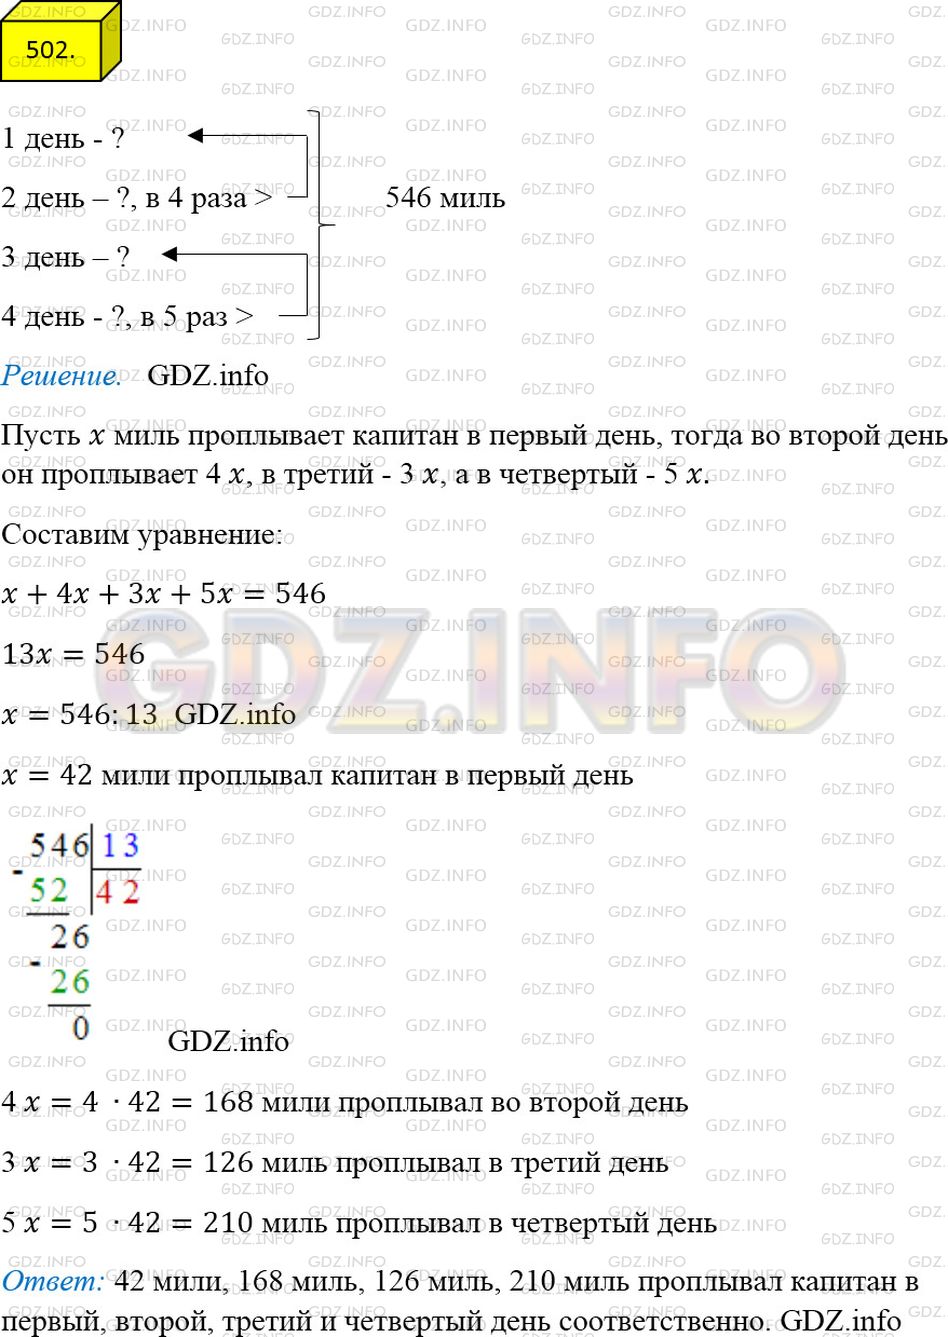 Фото ответа 4 на Задание 502 из ГДЗ по Математике за 5 класс: А.Г. Мерзляк, В.Б. Полонский, М.С. Якир. 2014г.